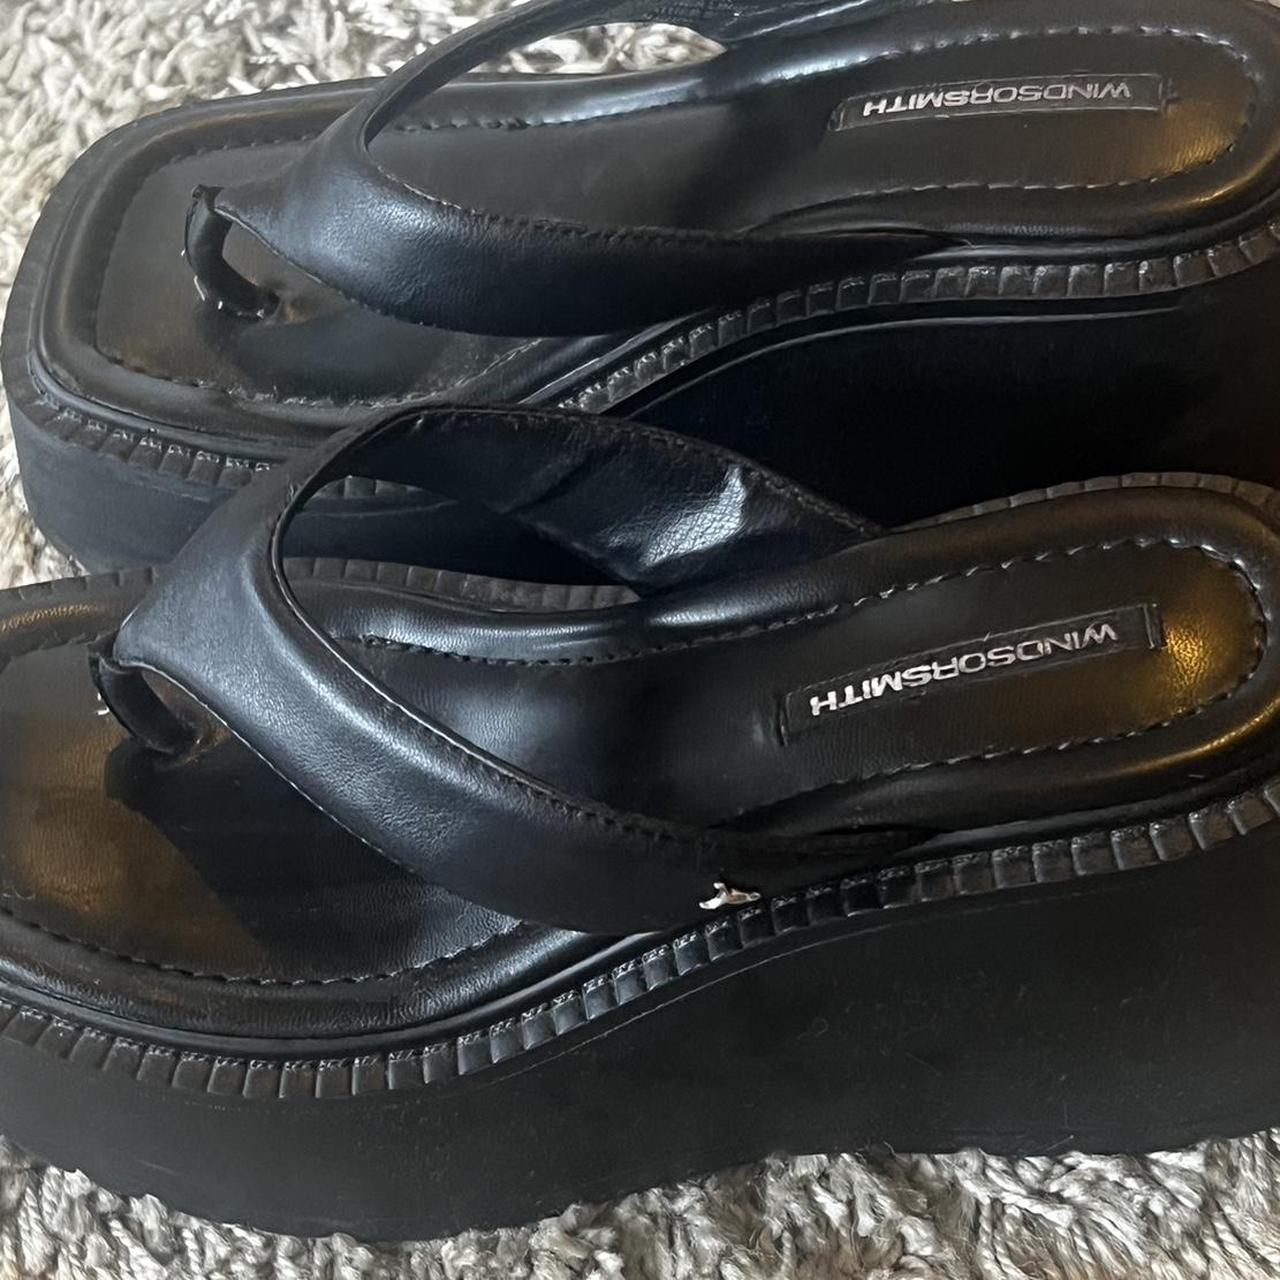 Windsor smith cliche black leather sandal Og price... - Depop